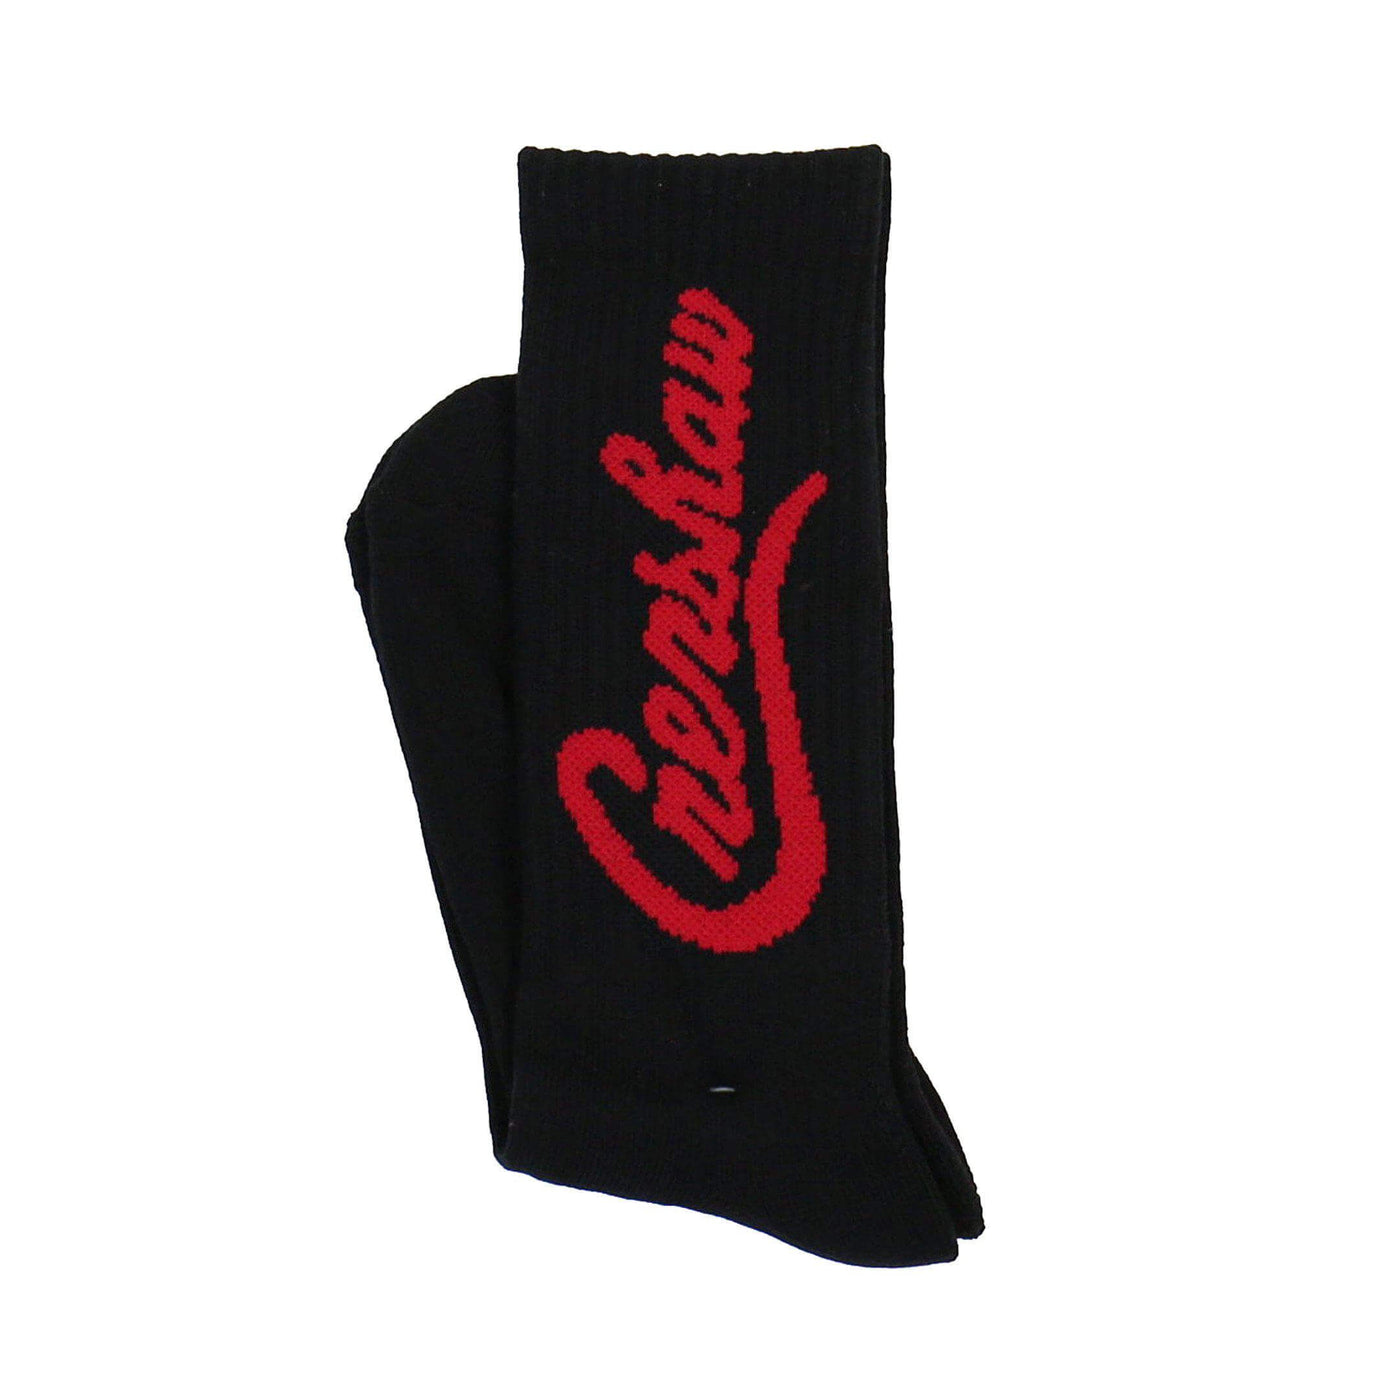 Crenshaw Socks - Black/Red-The Marathon Clothing